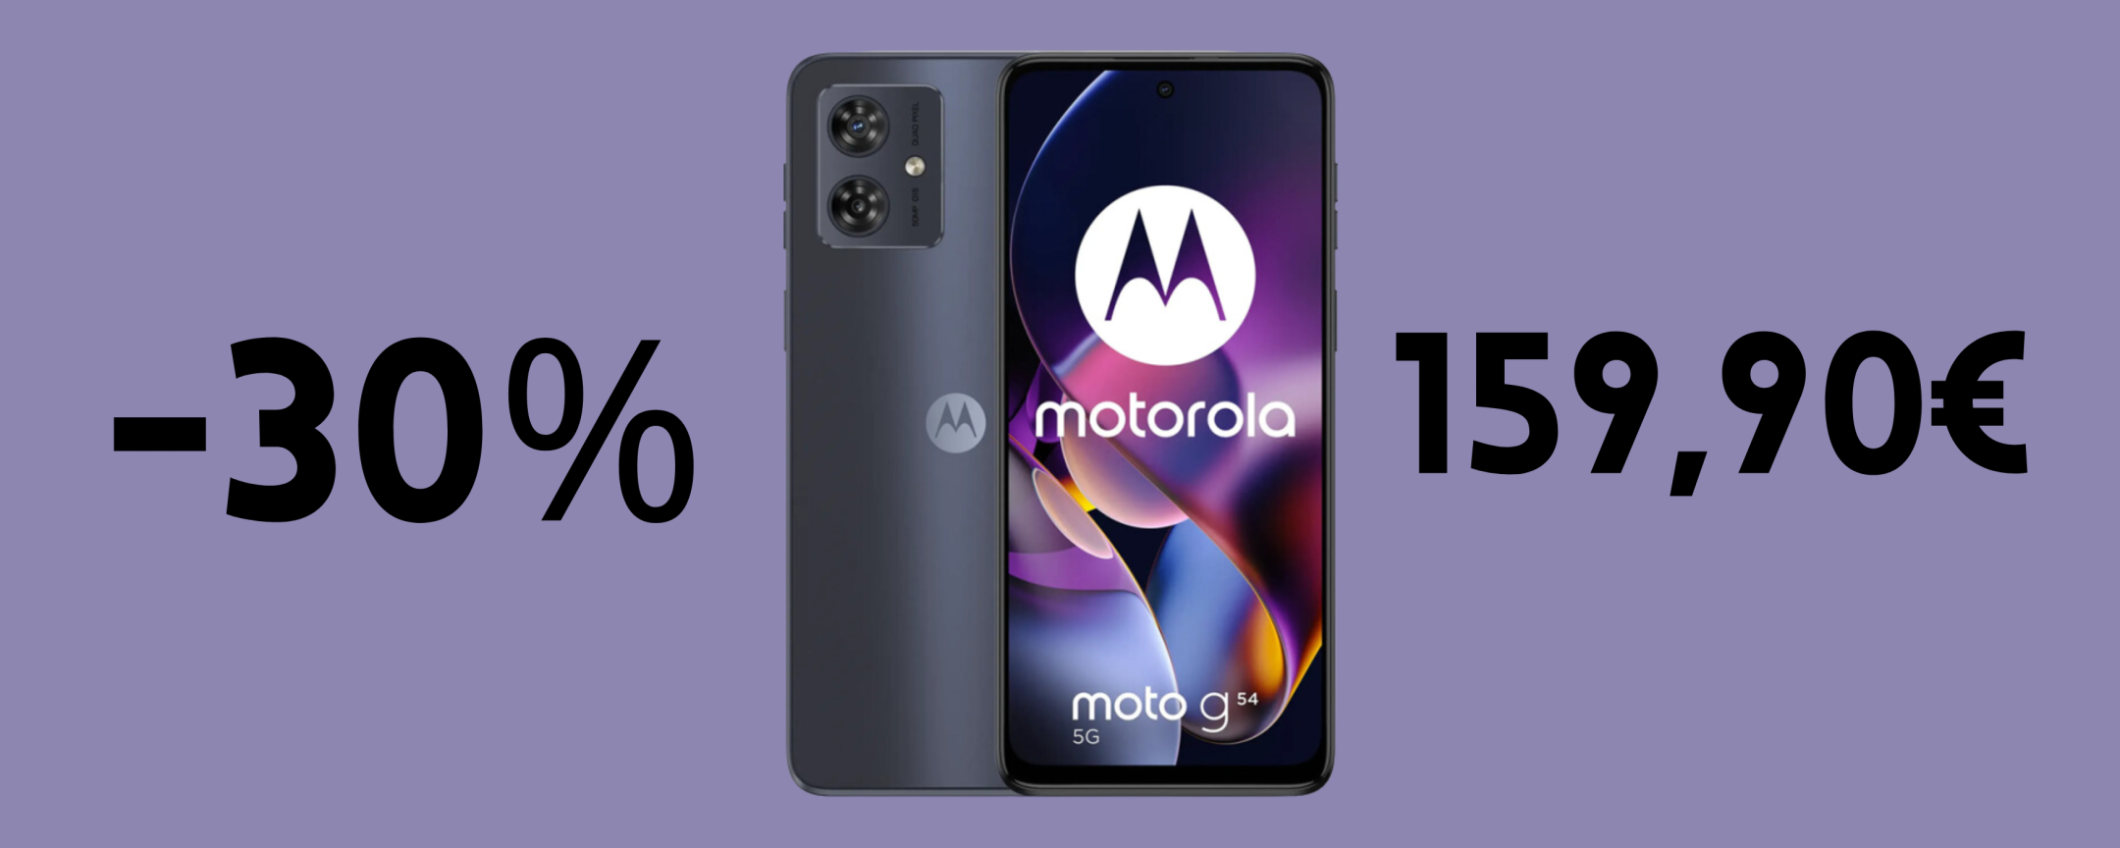 Motorola moto g54 5G in SUPER sconto del 30% a soli 159,90€